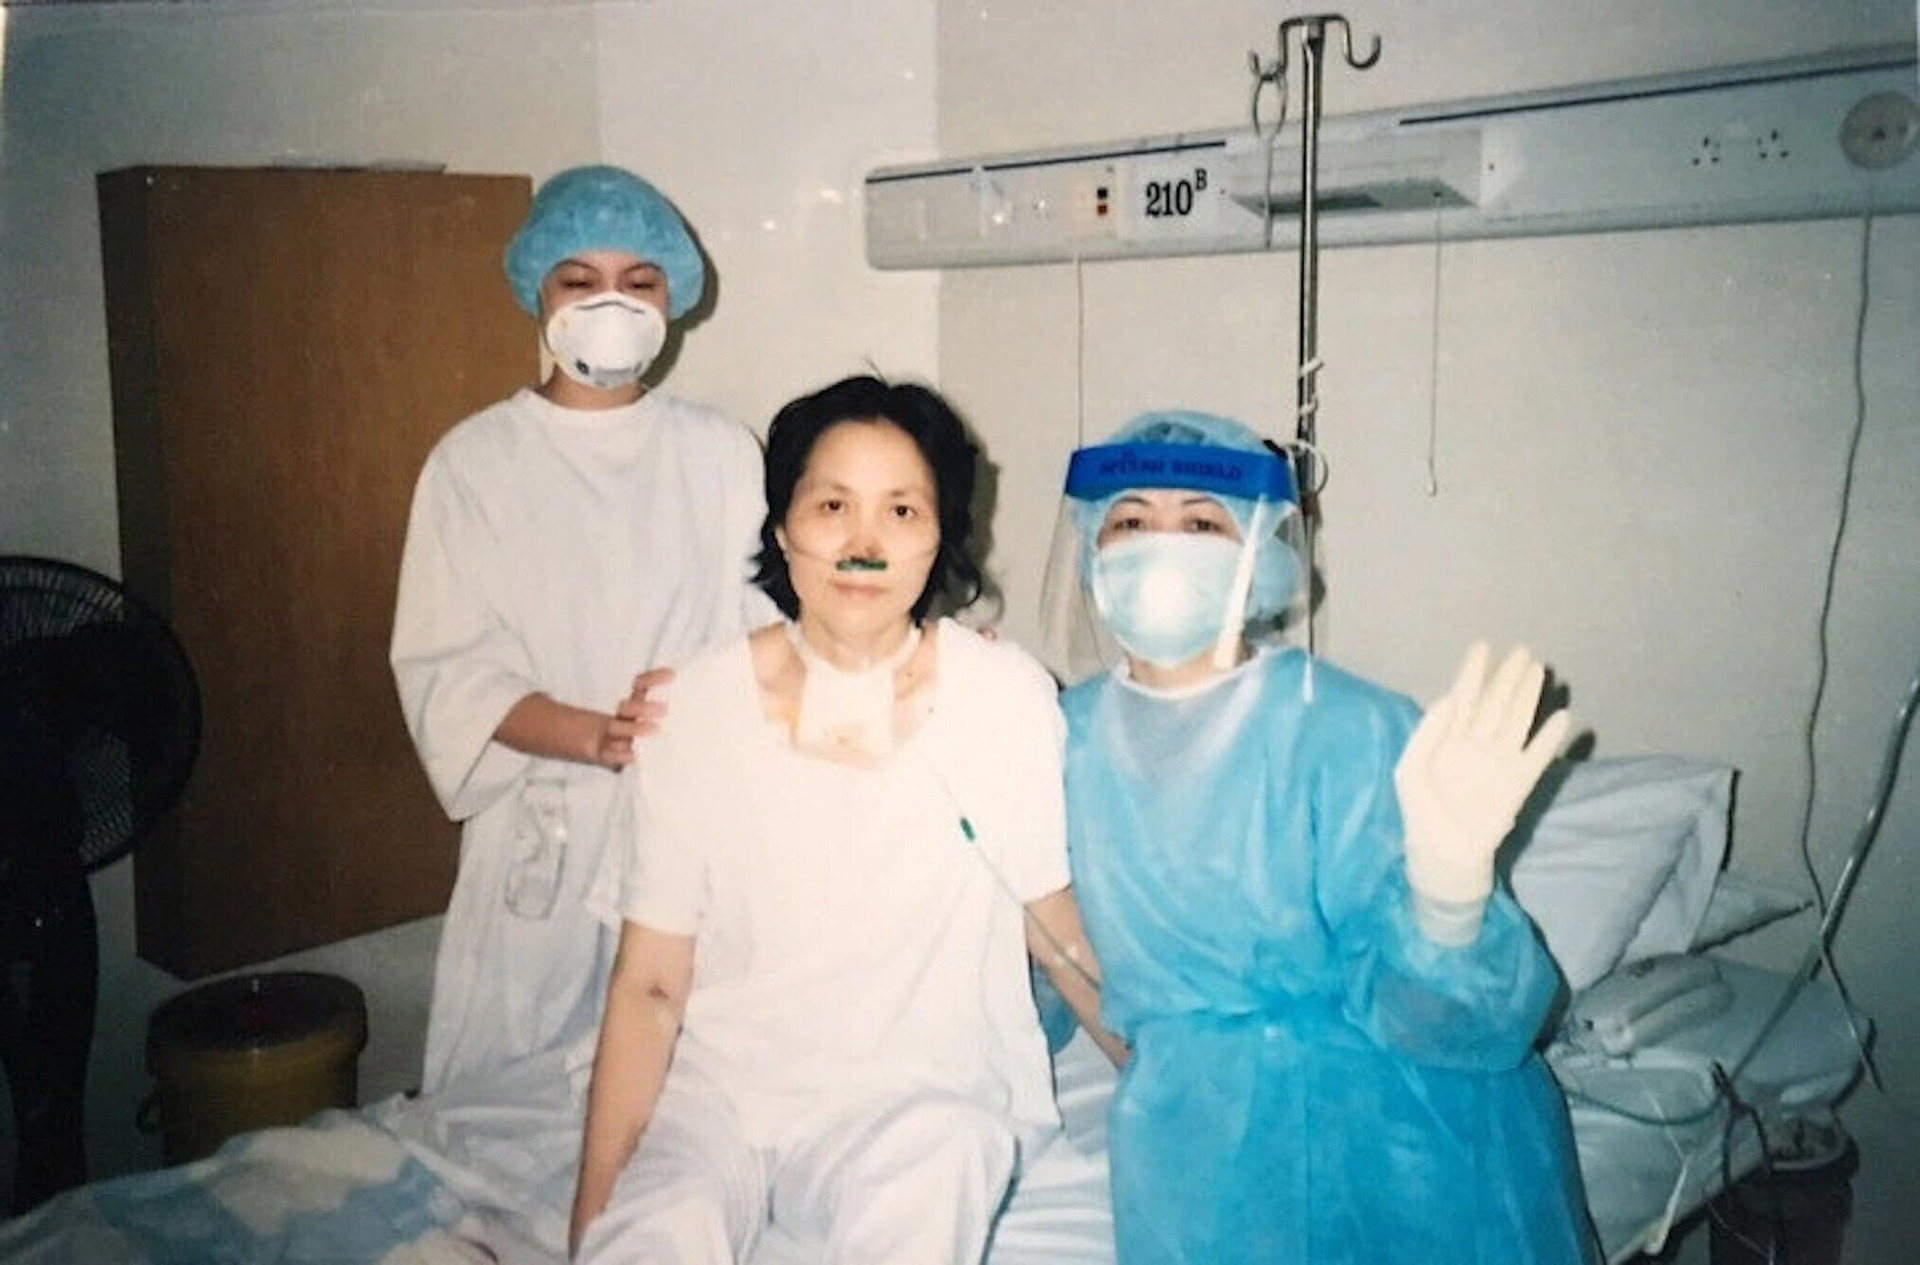 Trong ảnh là y tá Nguyễn Thị Mến tỉnh lại sau gần một tháng hôn mê vì nhiễm SARS. Dịch SARS xuất hiện tại Việt Nam lần đầu tiên ngày 22/2/2003 và kết thúc vào ngày 8/4/2003 khi bệnh nhân cuối cùng được chữa khỏi. Ngày 28/4/2003, Việt Nam là quốc gia đầu tiên trên thế giới được Tổ chức Y tế Thế giới (WHO) công nhận khống chế thành công dịch SARS. Trong đợt dịch này, tổng cộng có 63 người nhiễm SARS ở Việt Nam, 37/63 người nhiễm bệnh là nhân viên y tế.